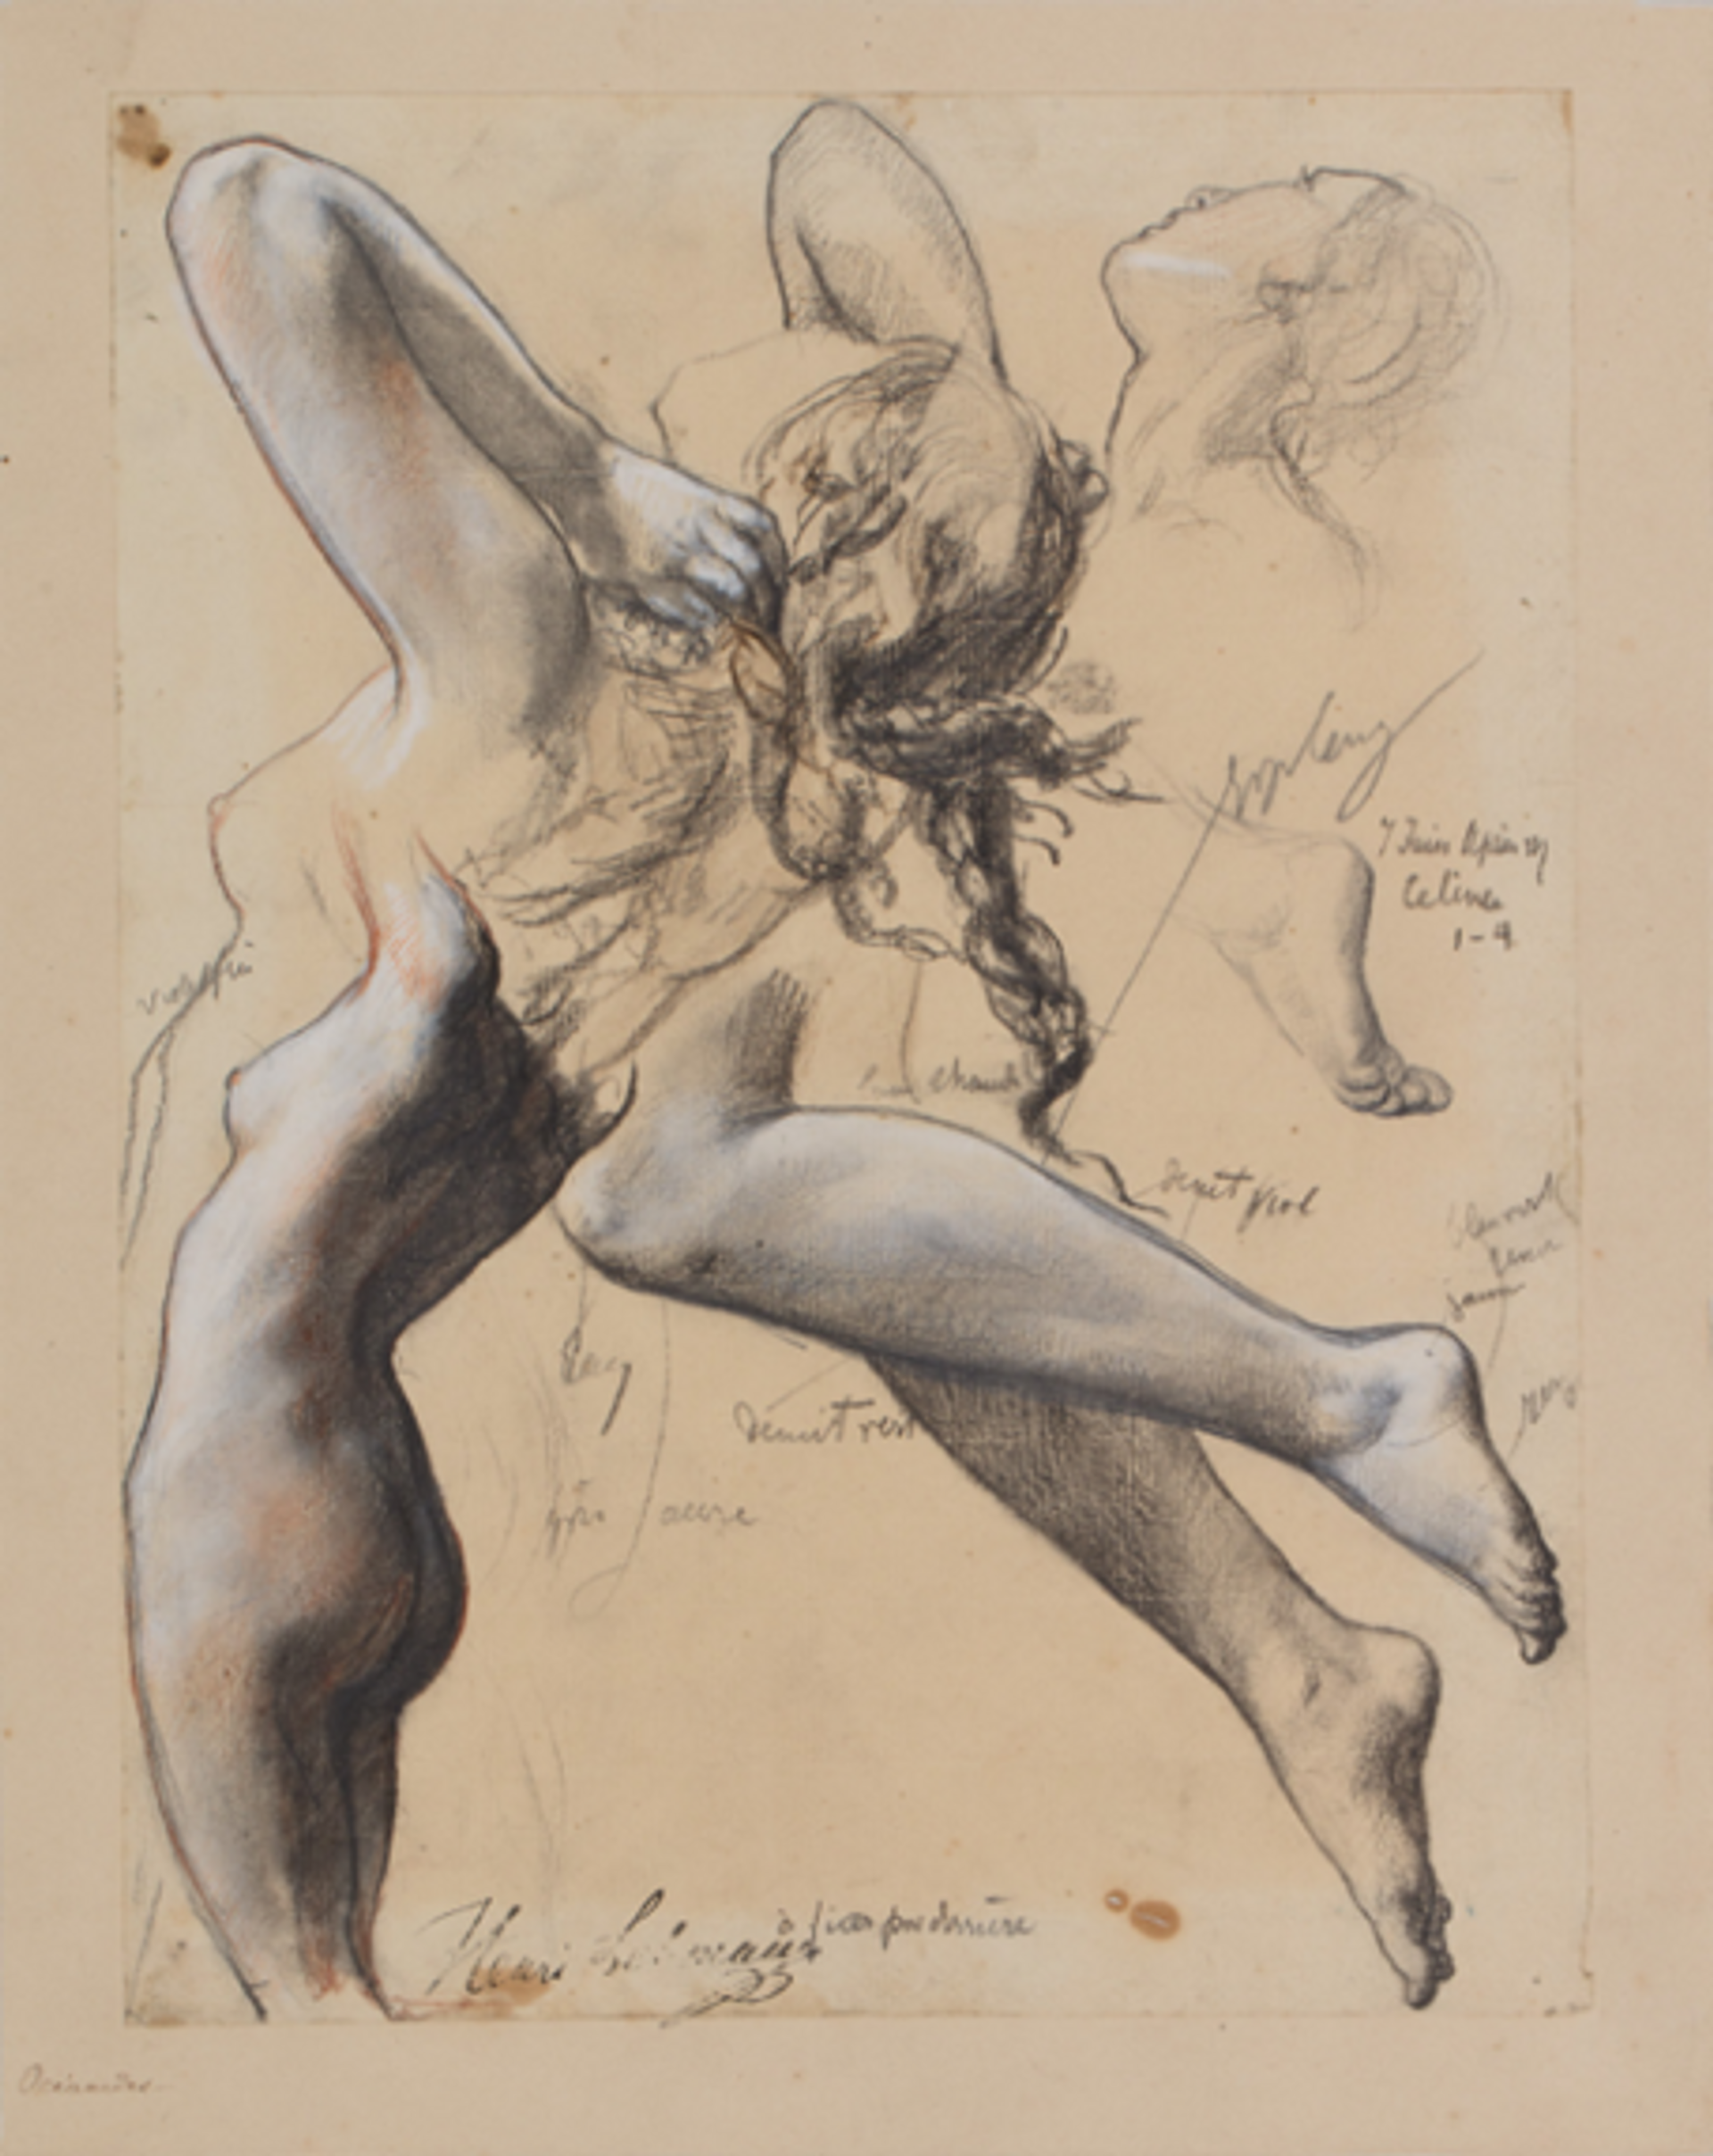 Henri Lehmann, Feuille d’étude d’une femme nue vue de dos, de trois quarts à gauche, les bras levés, 1849-1850, pierre noire et craie blanche sur papier beige. © Orléans, musée des Beaux-Arts